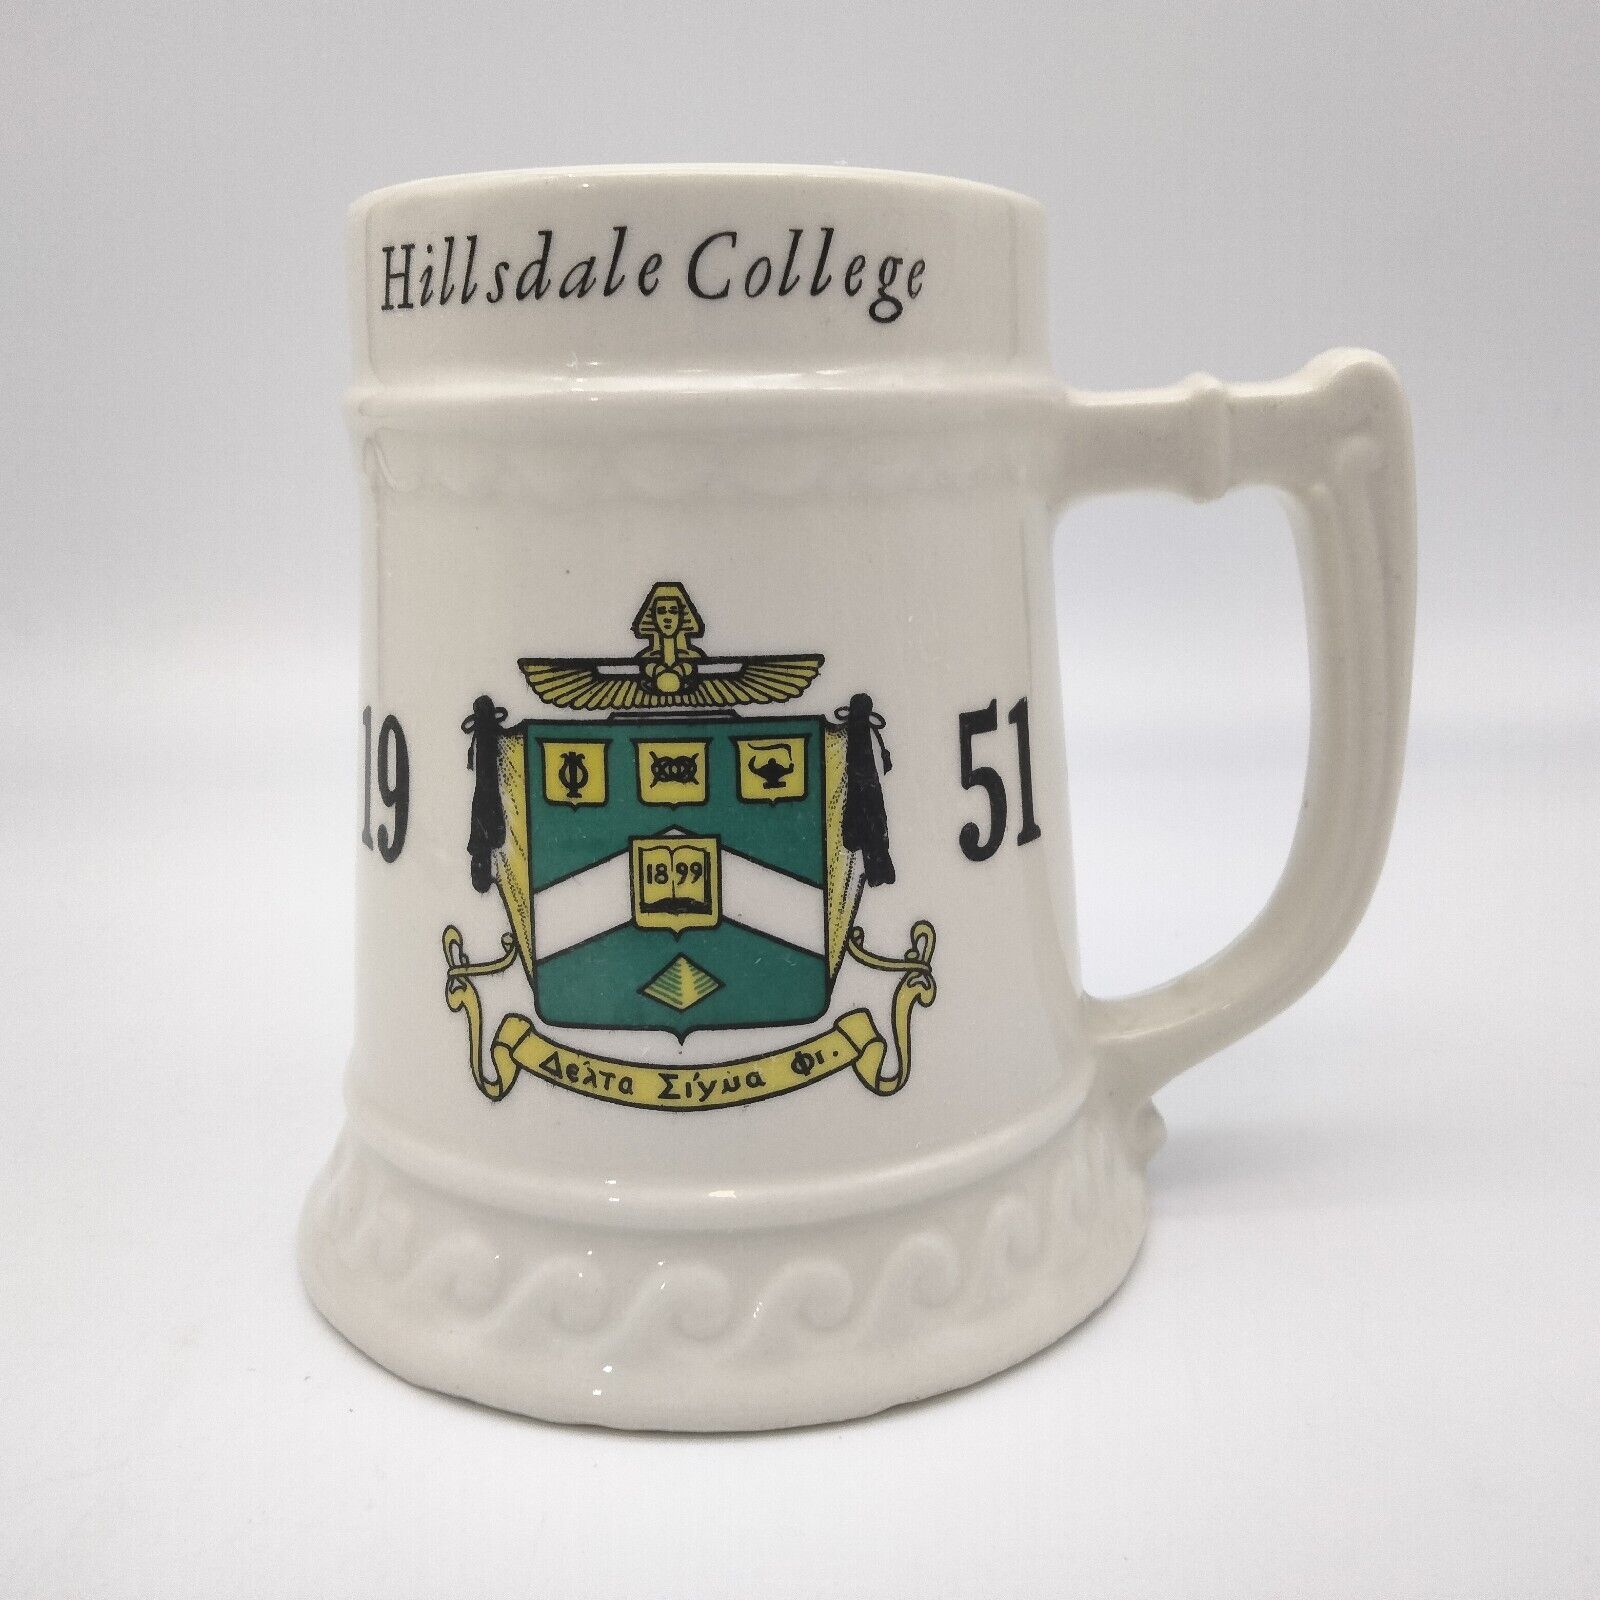 ΔΣΦ Delta Sigma Phi Hillsdale College Spring Formal Mug 1951